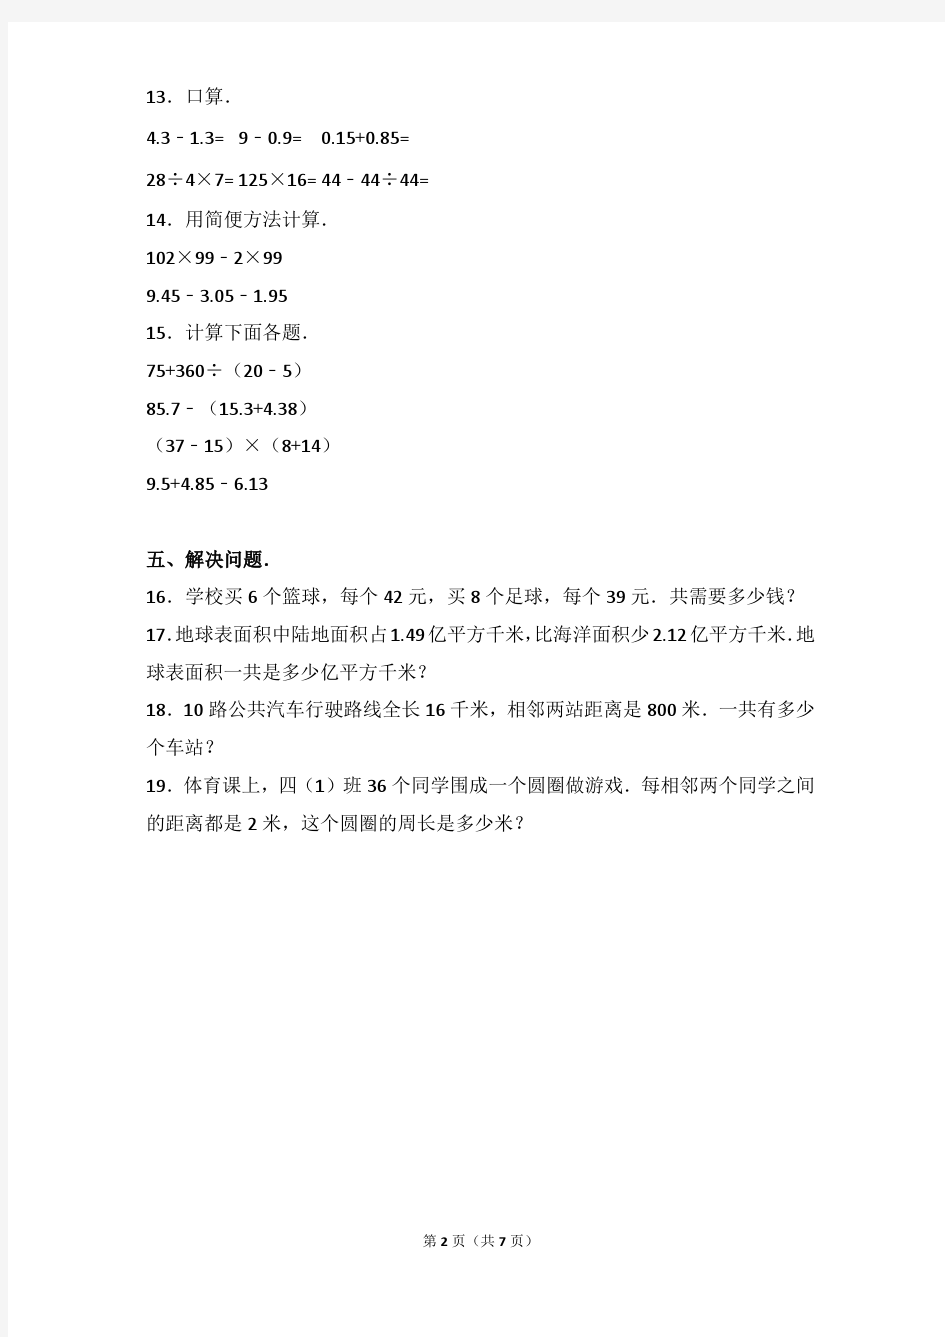 2017-2018年广东省海丰县四年级(下)期末数学试卷及参考答案年